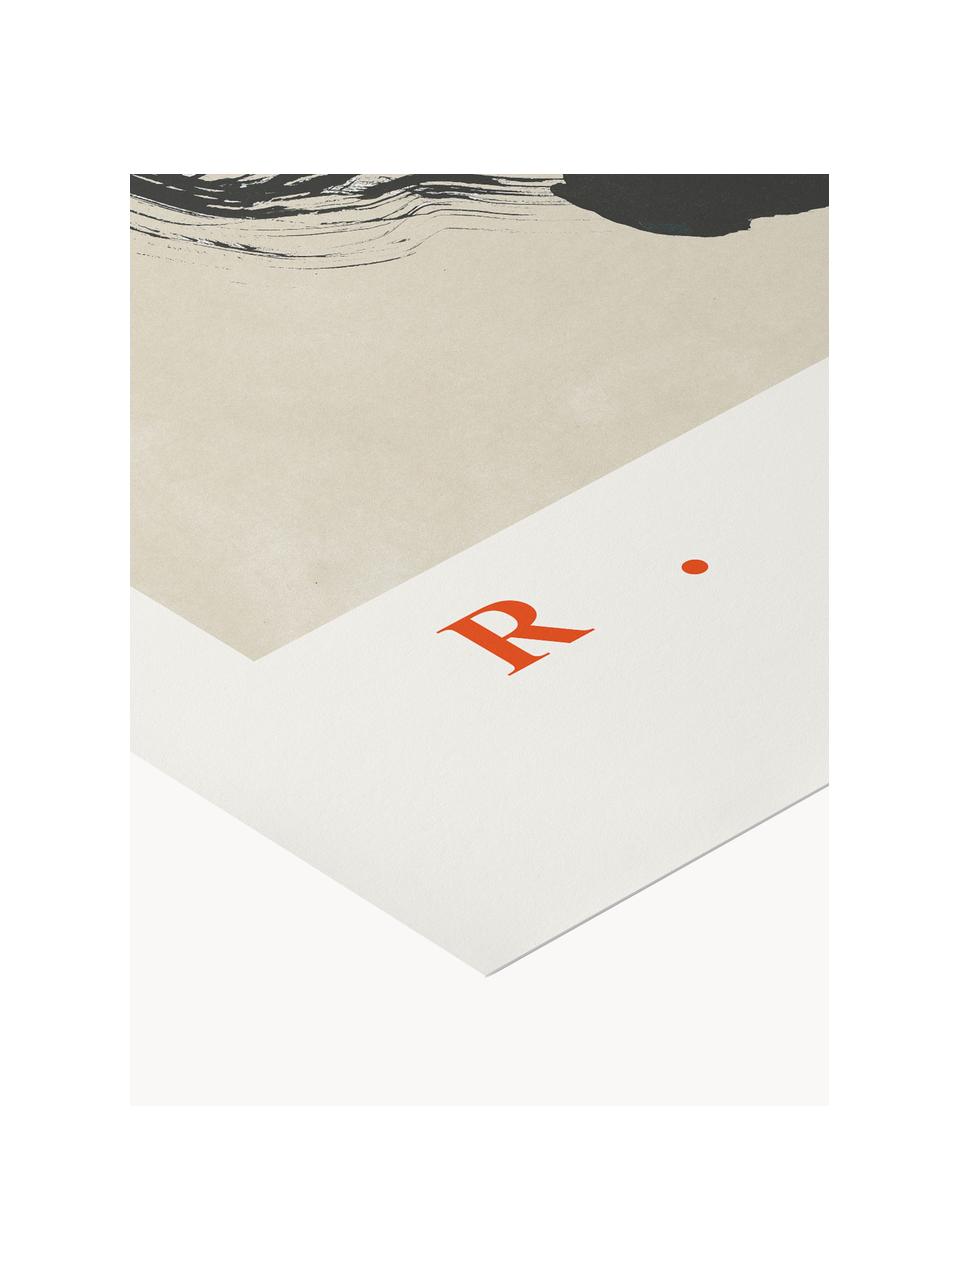 Plakat Ikigai no. 02, Czarny, beżowy, ciemny czerwony, S 30 x W 40 cm